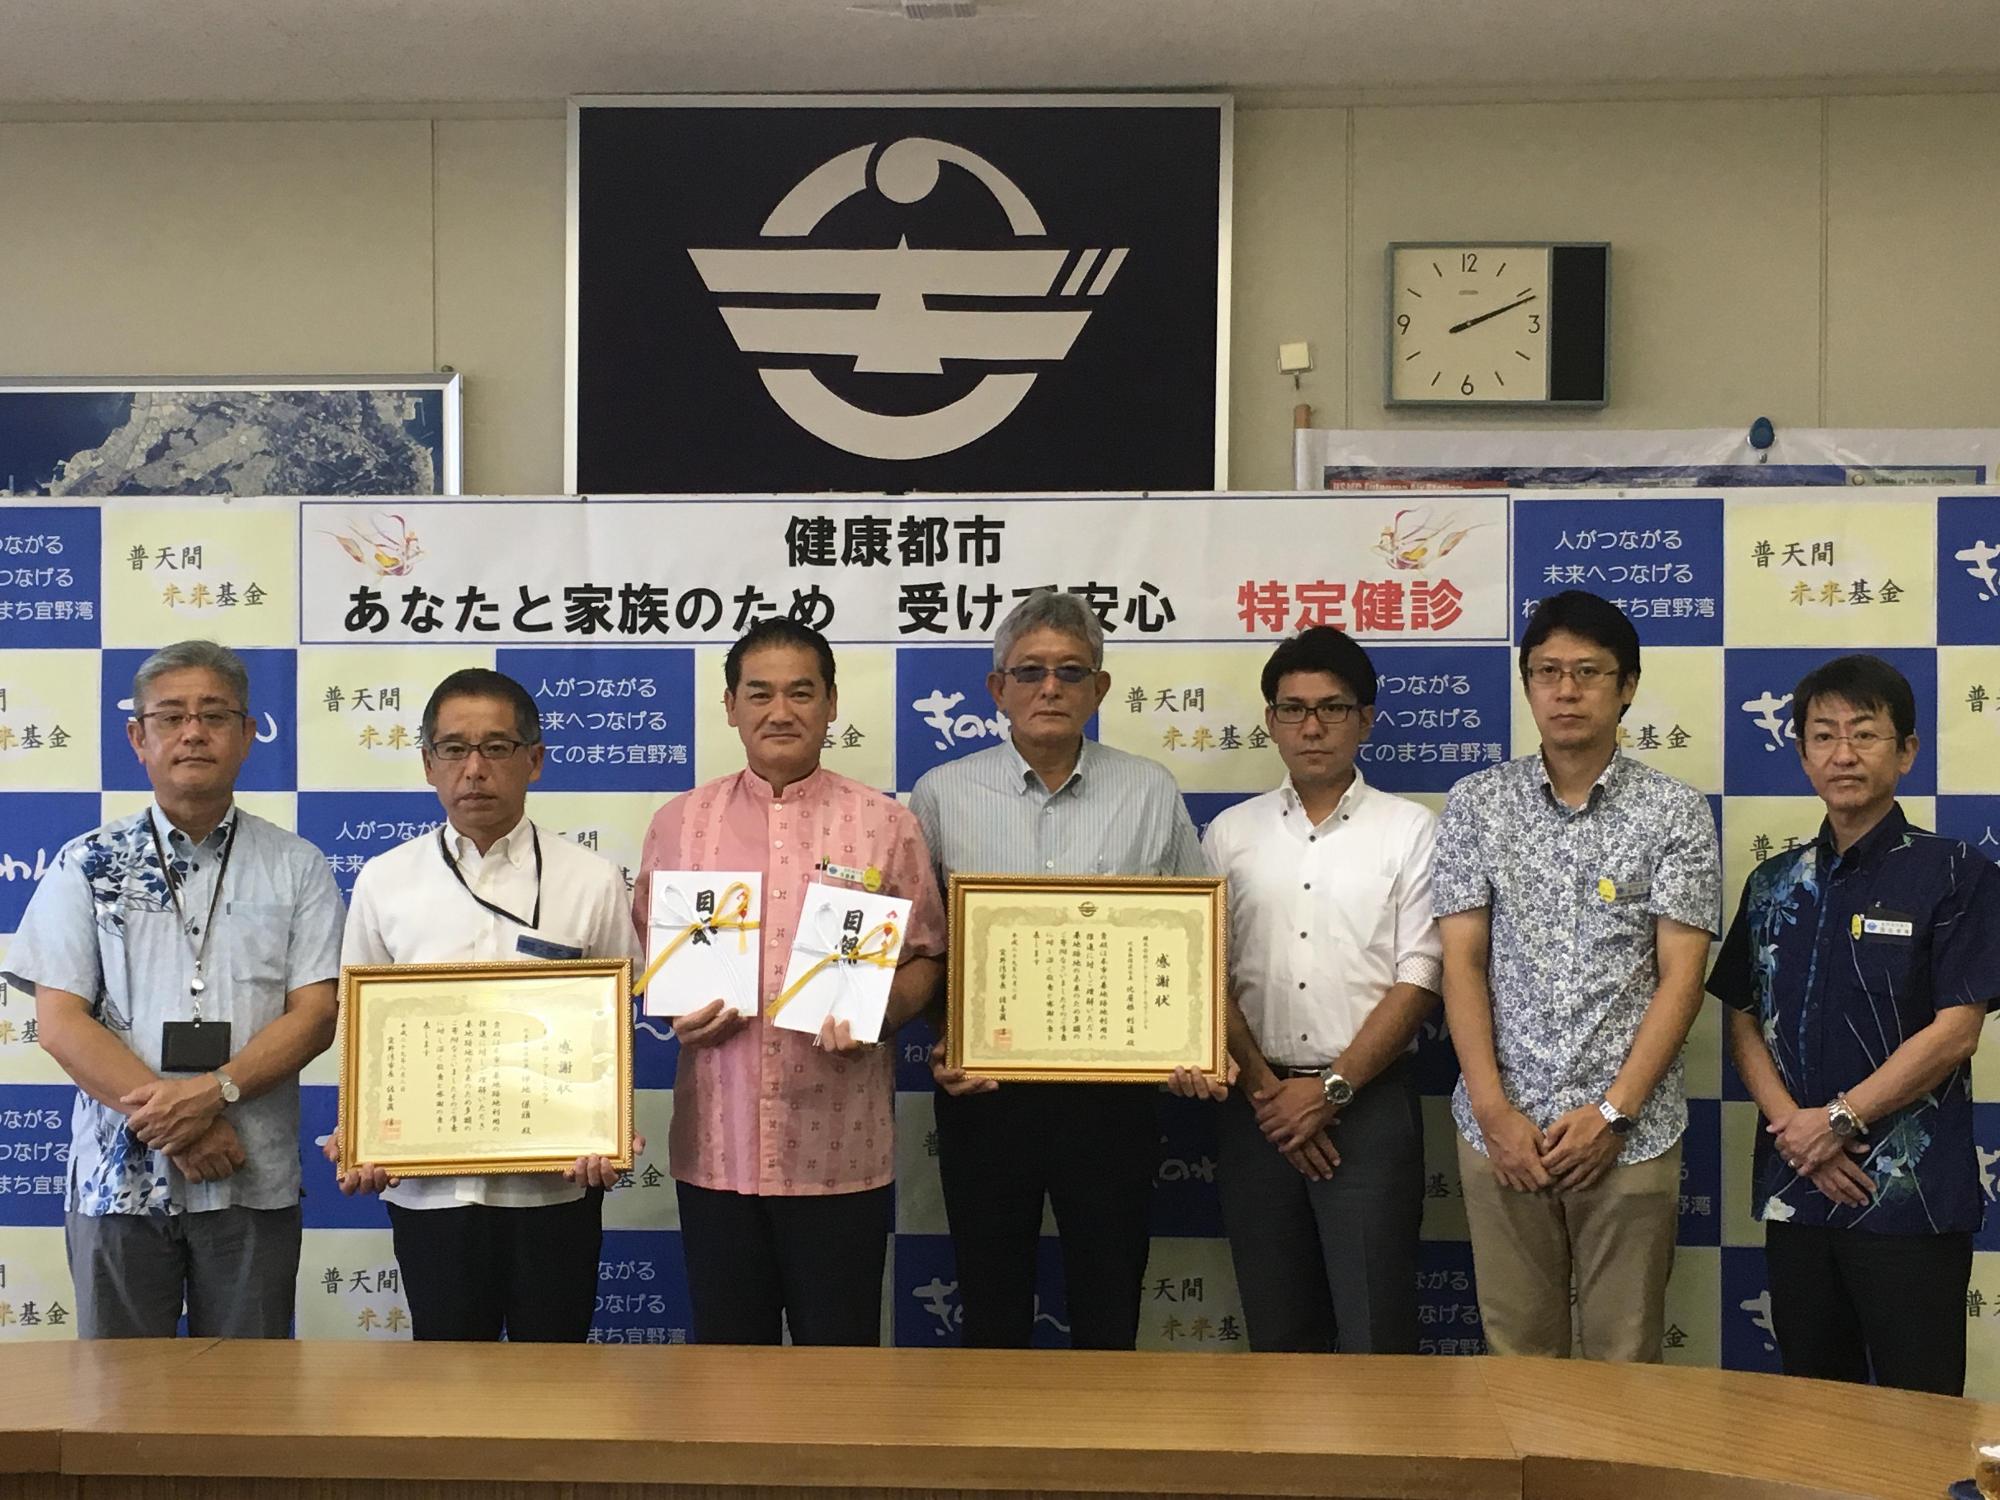 佐喜眞市長が両手に目録を持ち、両隣の男性が額縁に入った賞状を持っており、関係者の方々が両手を前に組んで写っている集合写真